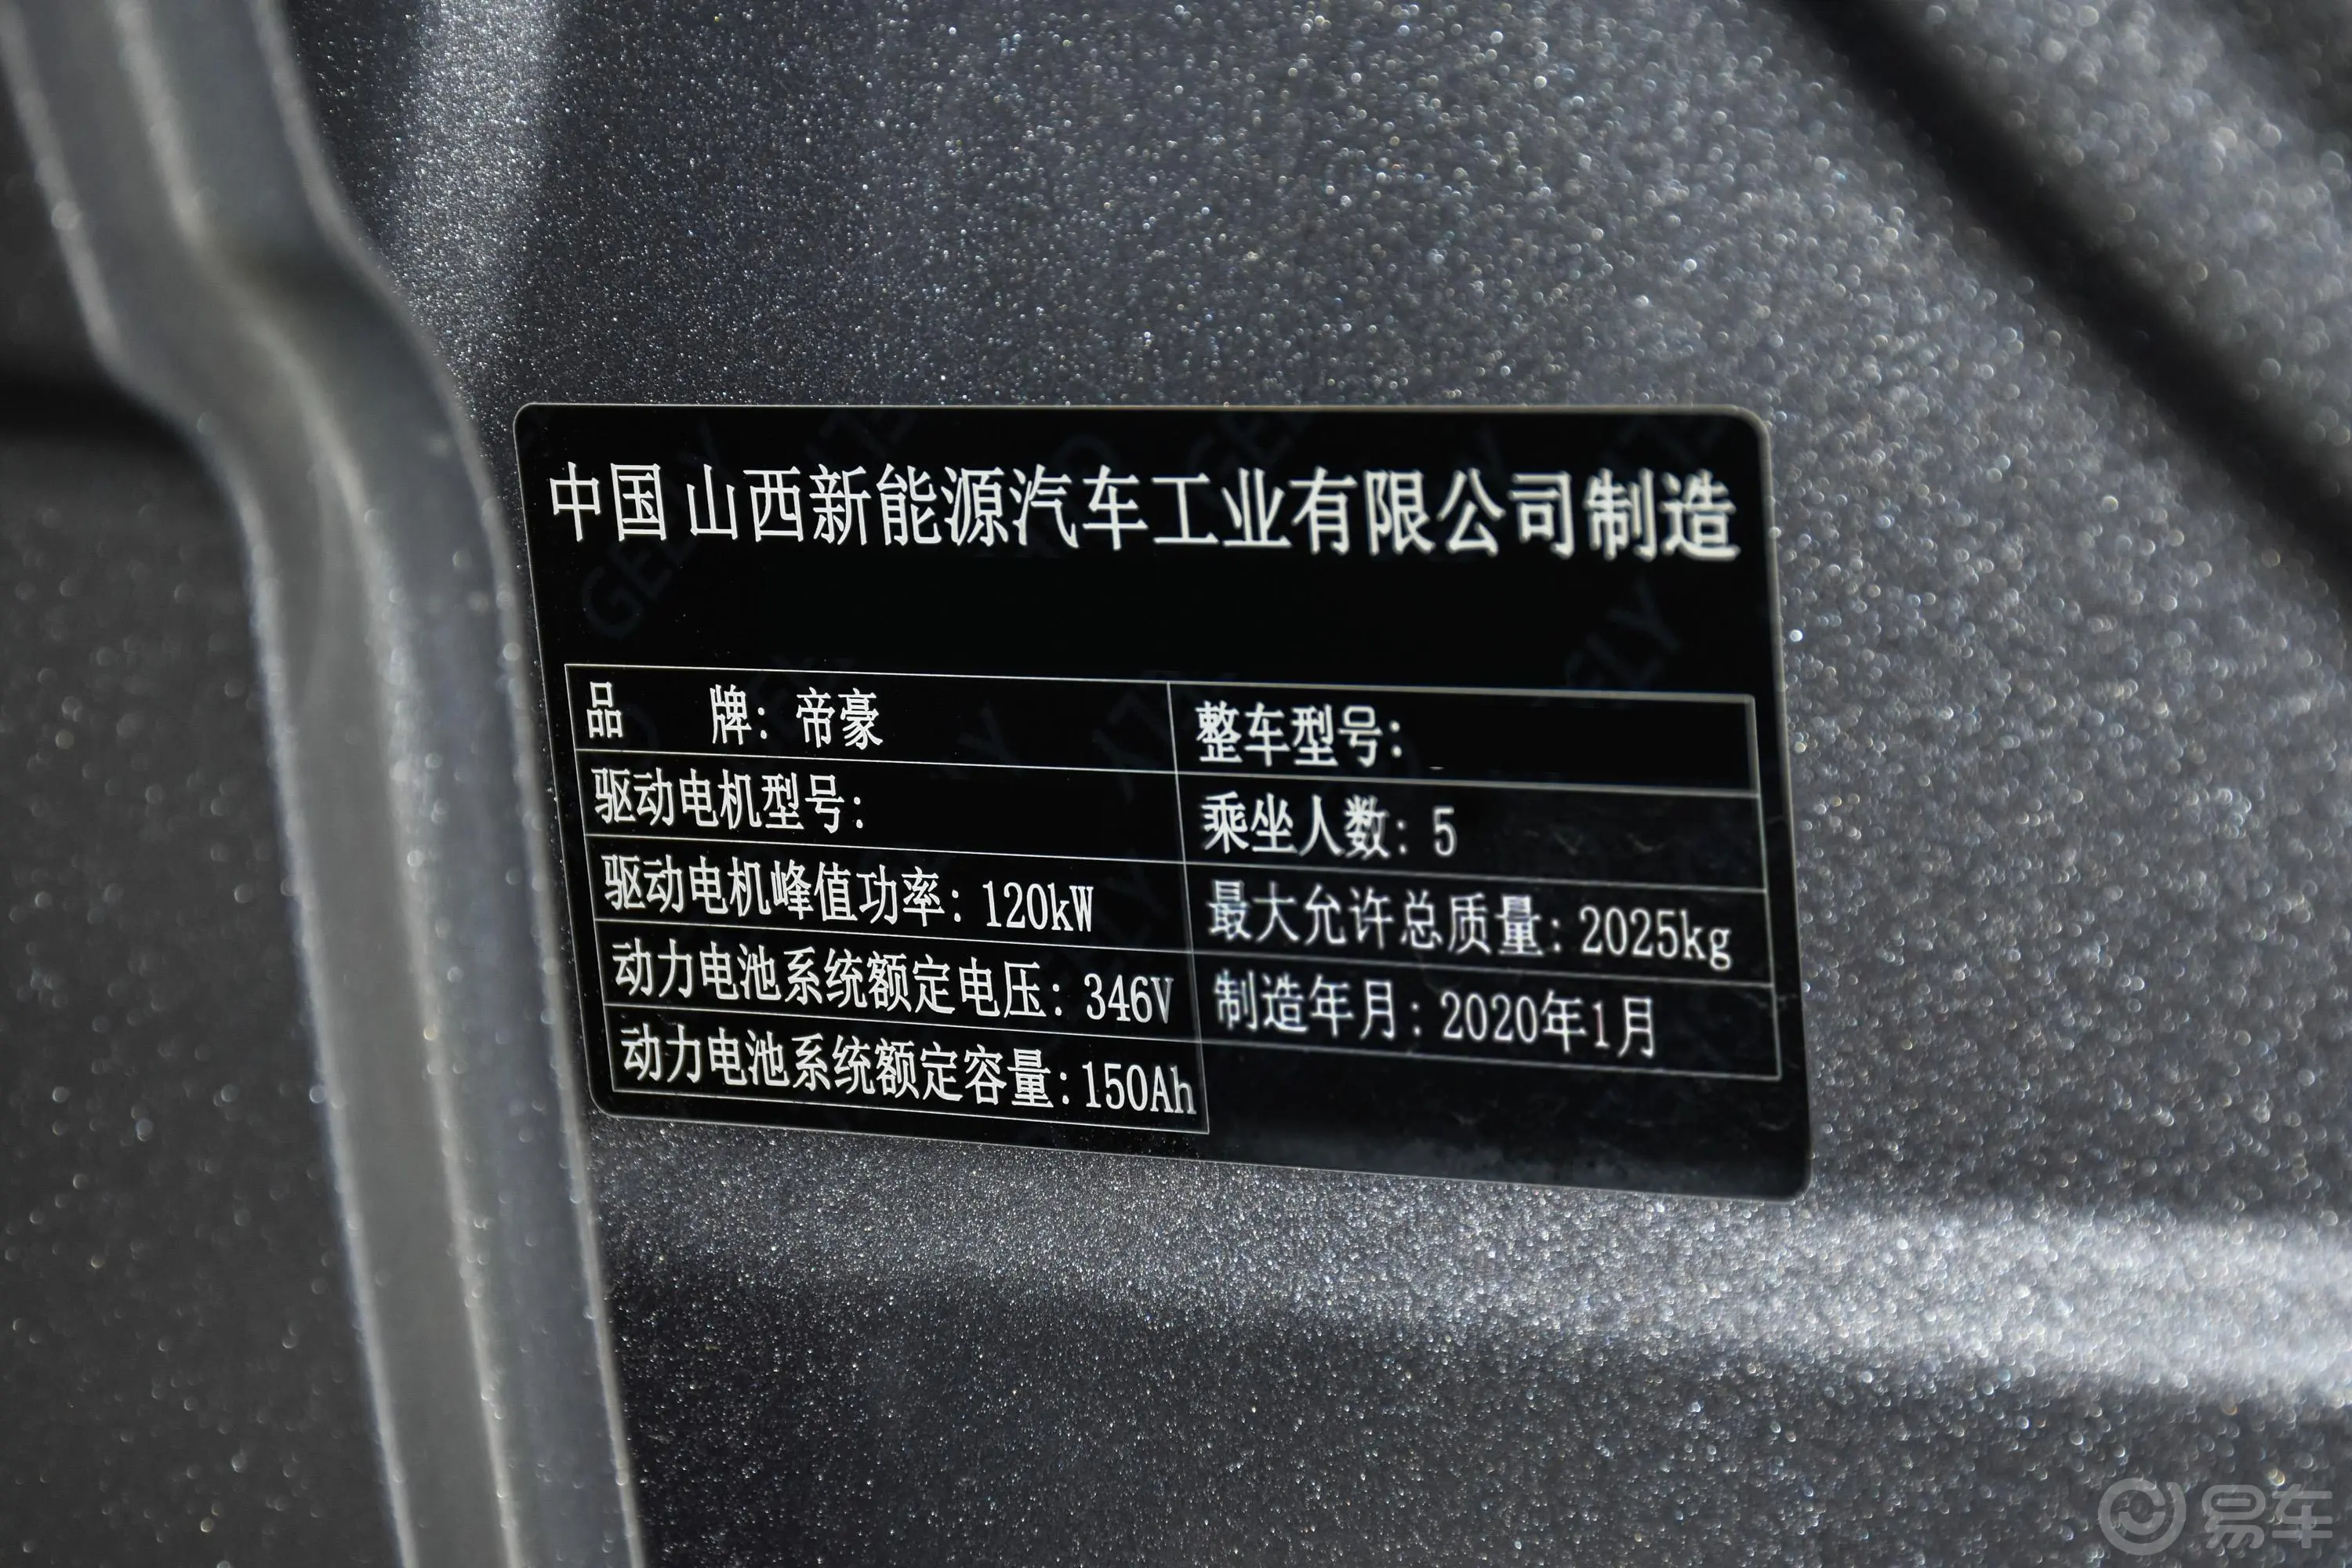 吉利几何A升级款 高维标准续航 平方版车辆信息铭牌